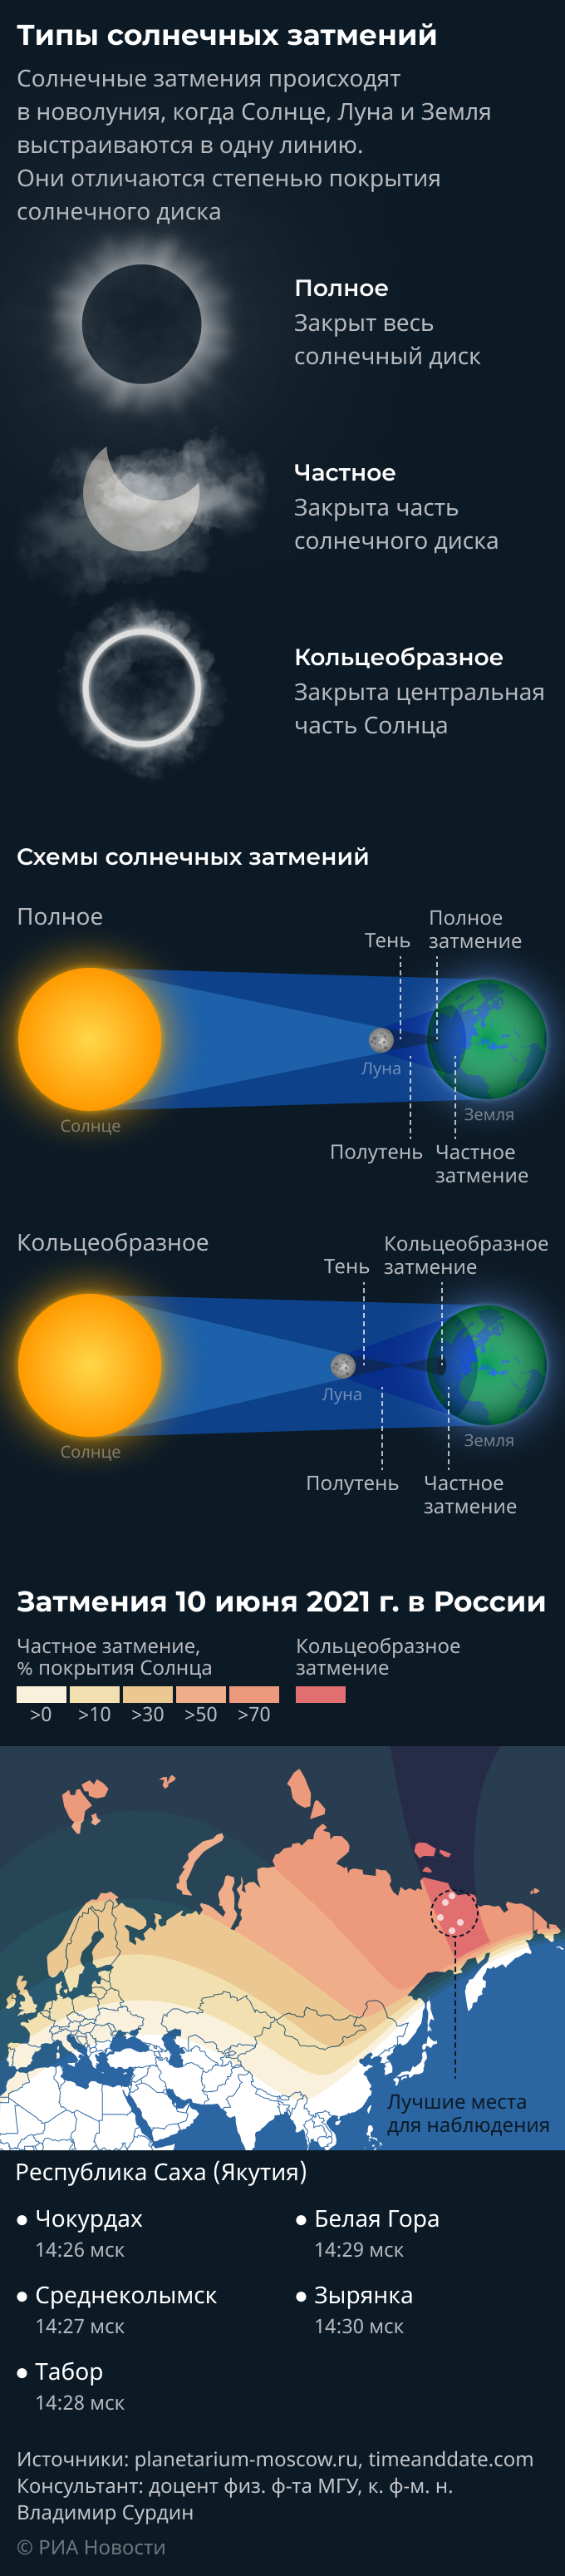 Затмение 10 апреля 2024. Кольцевое солнечное затмение. Когда будет солнечное затмение в 2021 году в России. Количество солнечных затмений в год. Через сколько лет будет затмение в России.